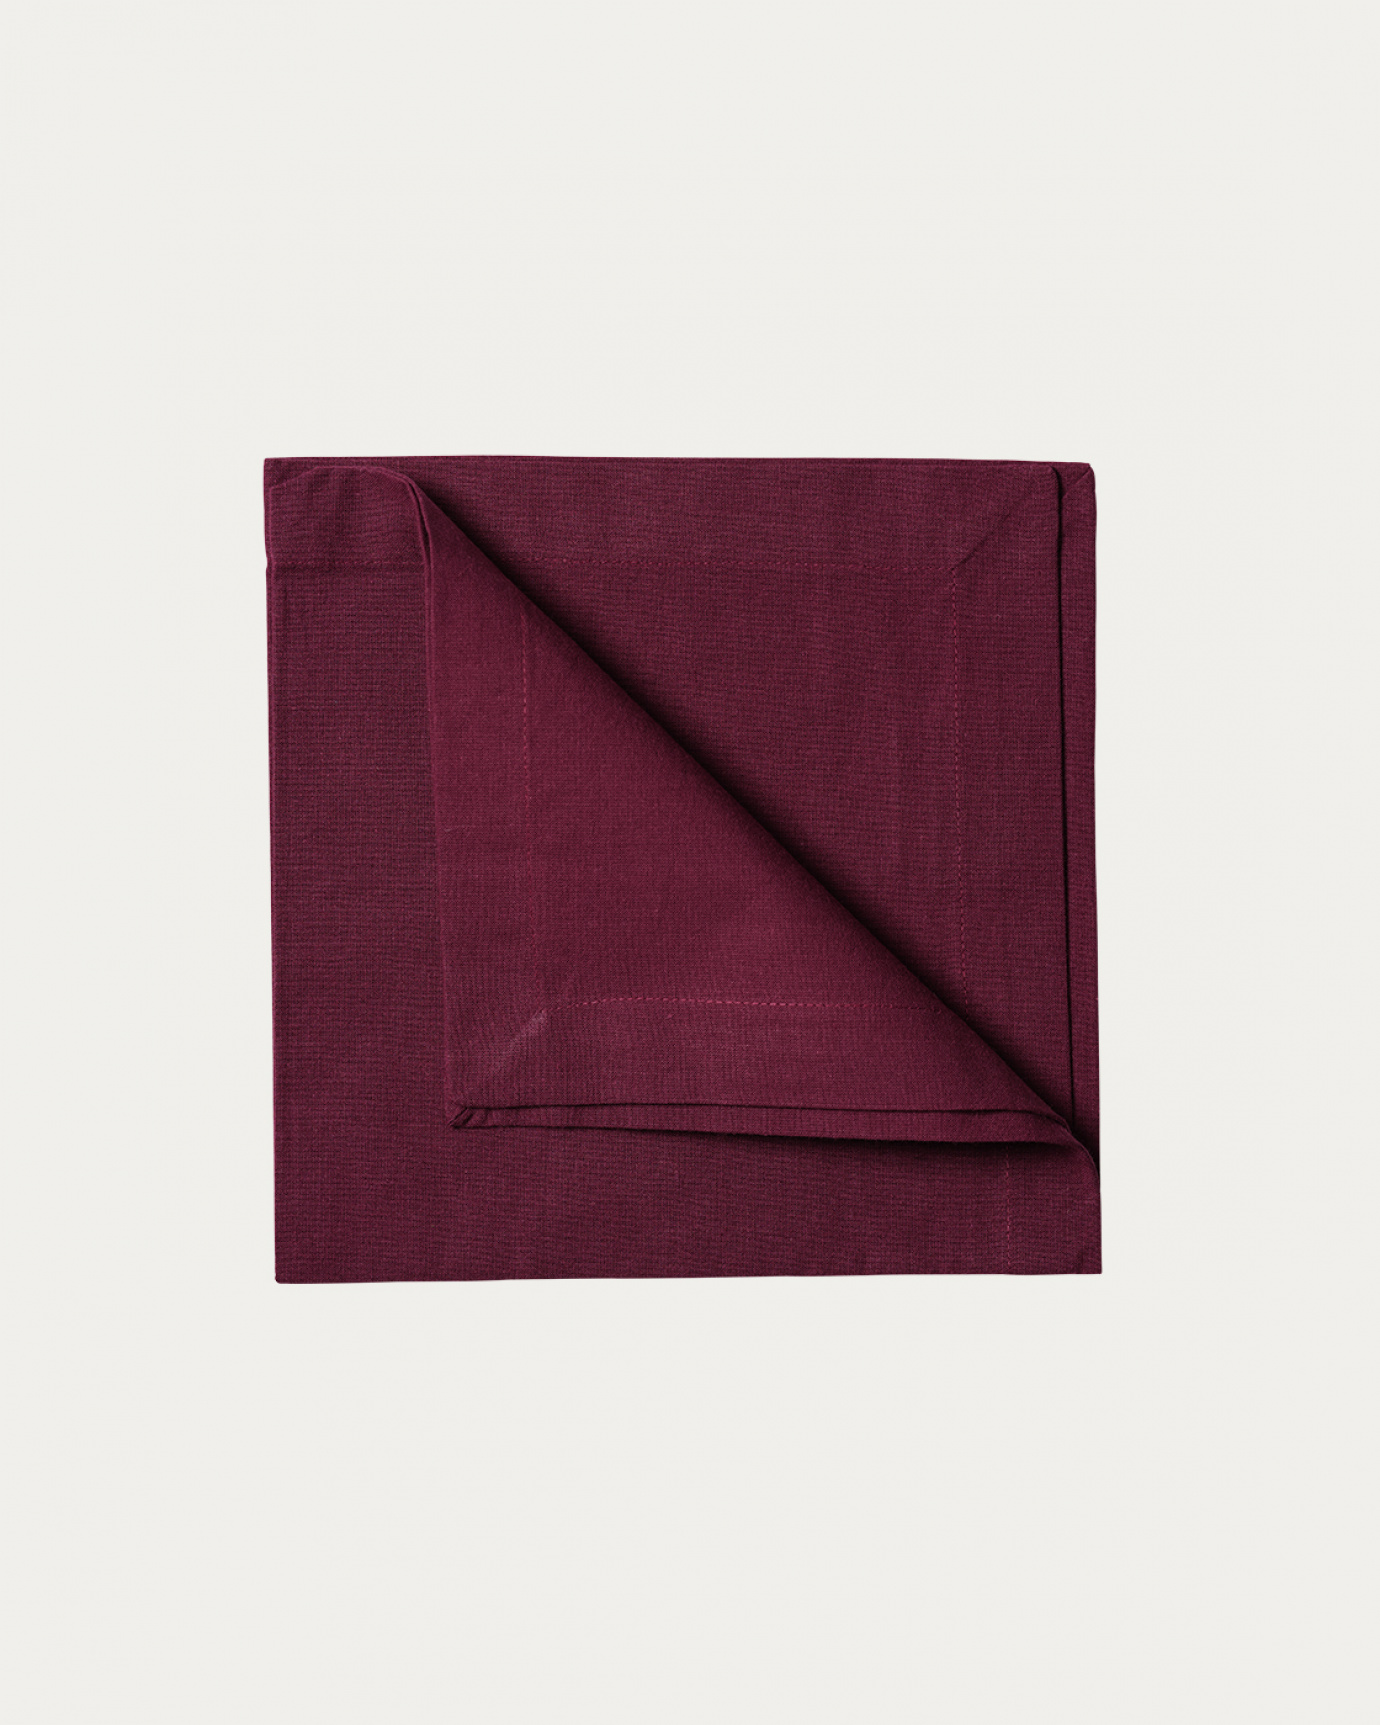 Produktbild burgunderrot ROBERT Serviette aus weicher Baumwolle von LINUM DESIGN. Größe 45x45 cm und in 4er-Pack verkauft.